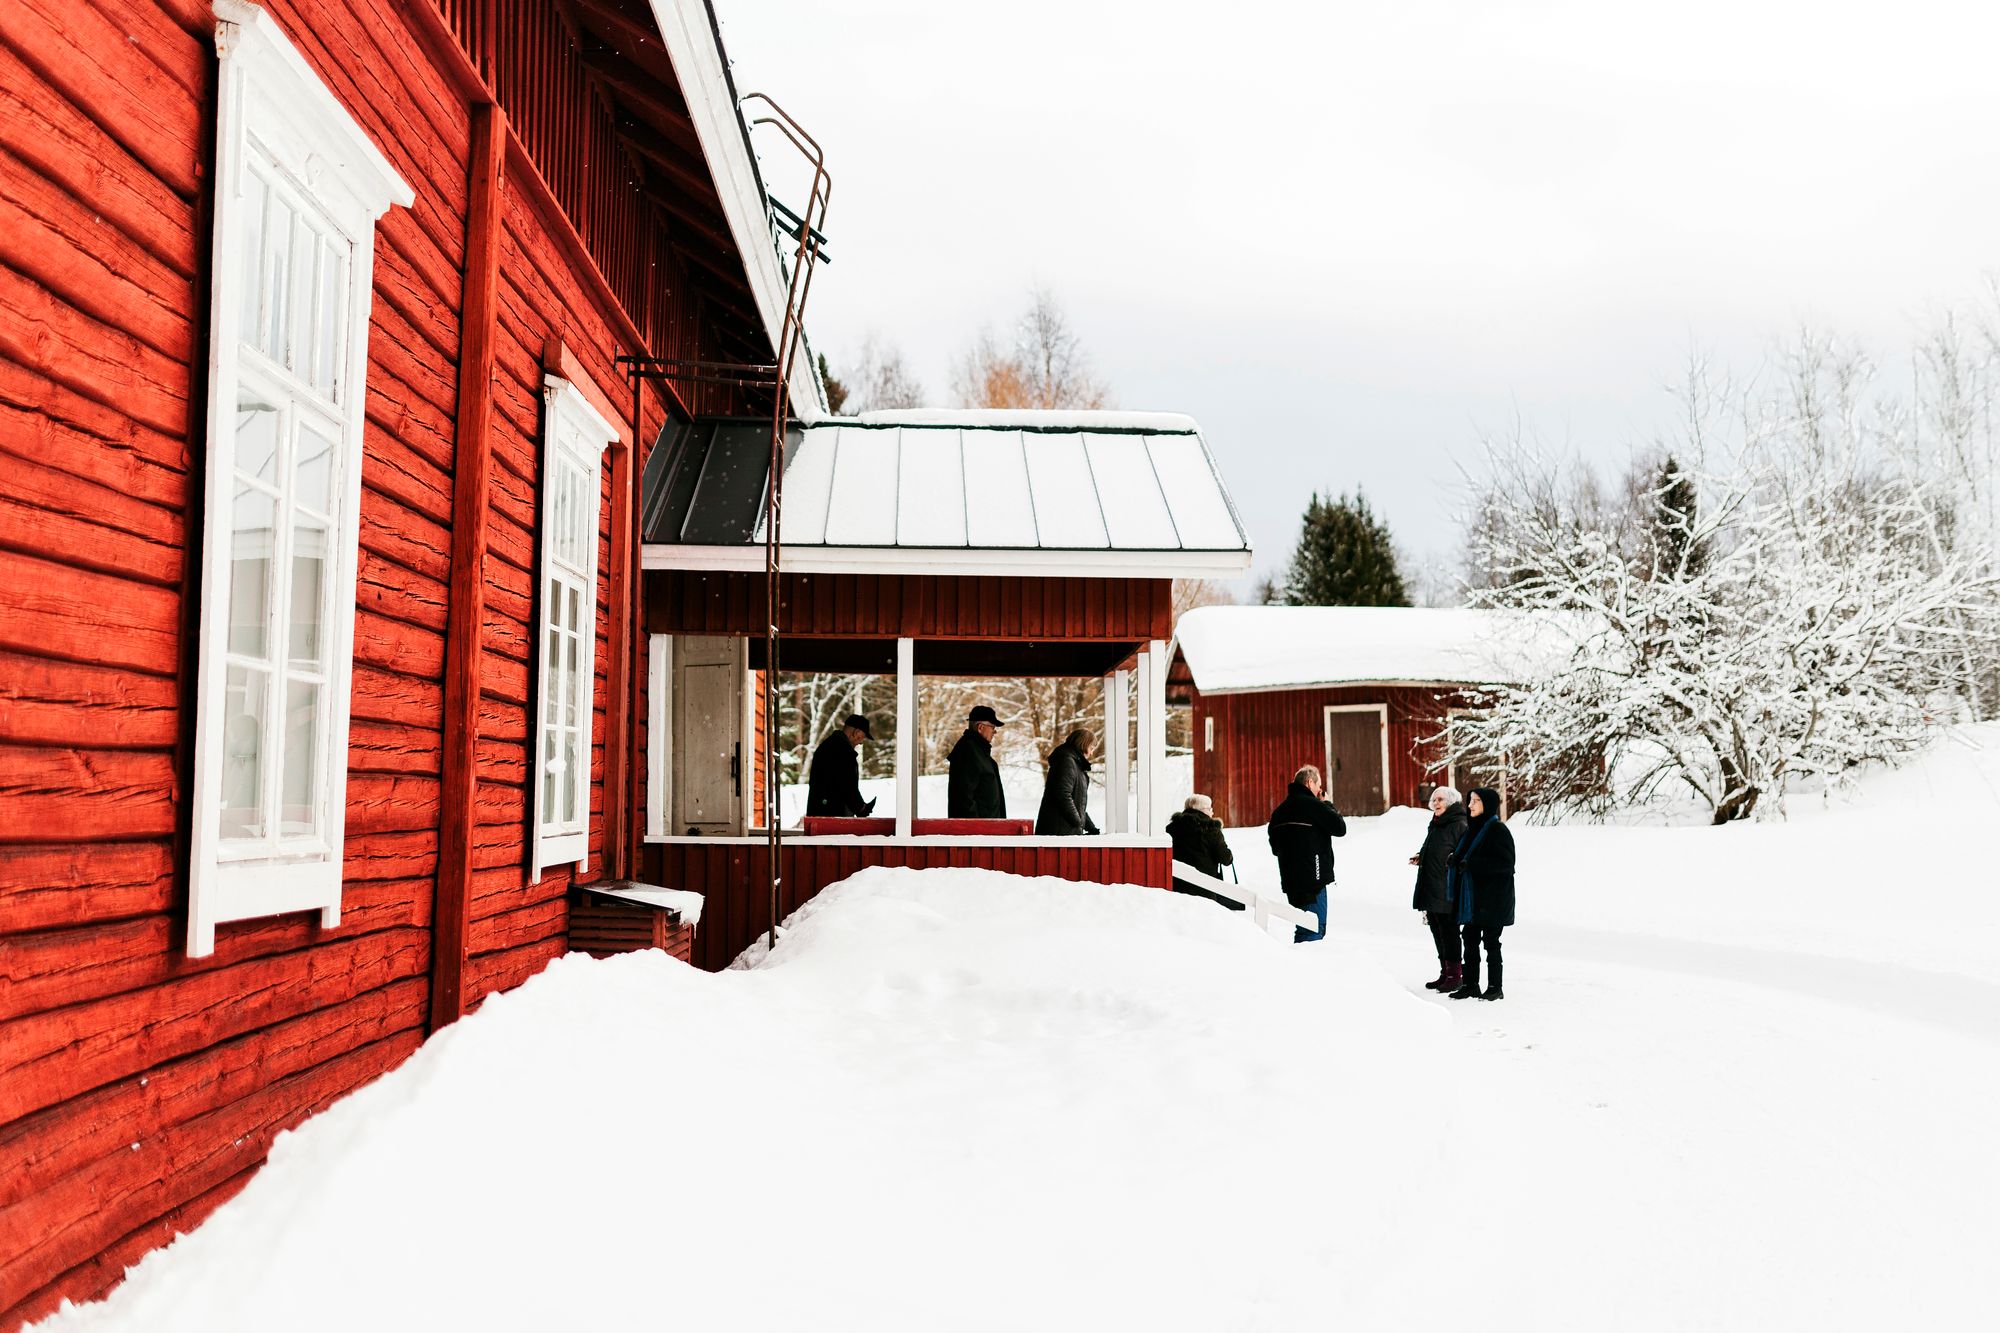 Rautjärven kirkko oli rakennettu vuonna 1881. Parikymmentä vuotta nuorempi Pitäjäntupa toimii nyt väliaikaisesti jumalanpalvelusten pitopaikkana. © Jani Kautto